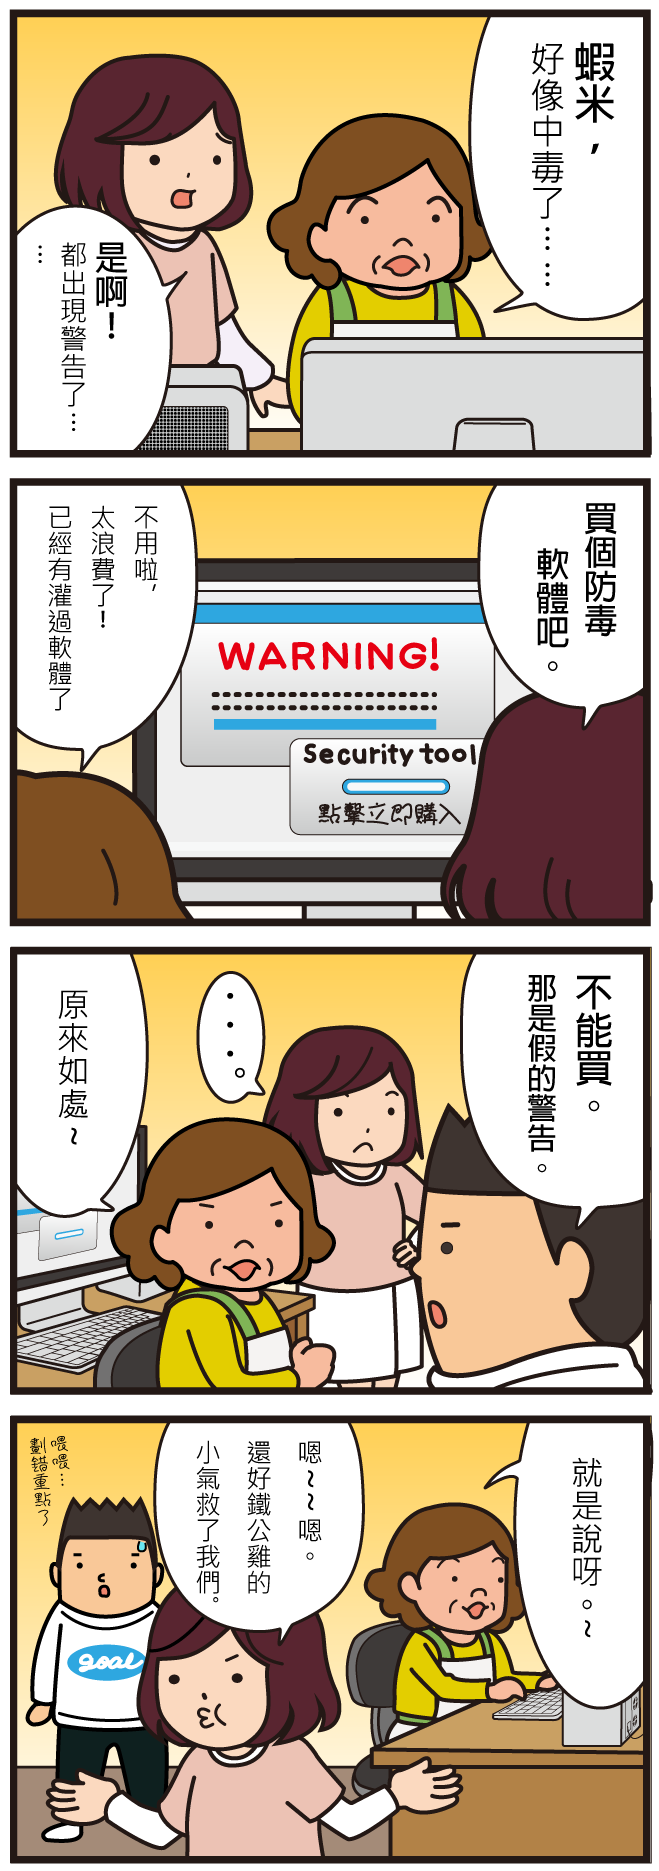 資安漫畫 假防毒軟體 26